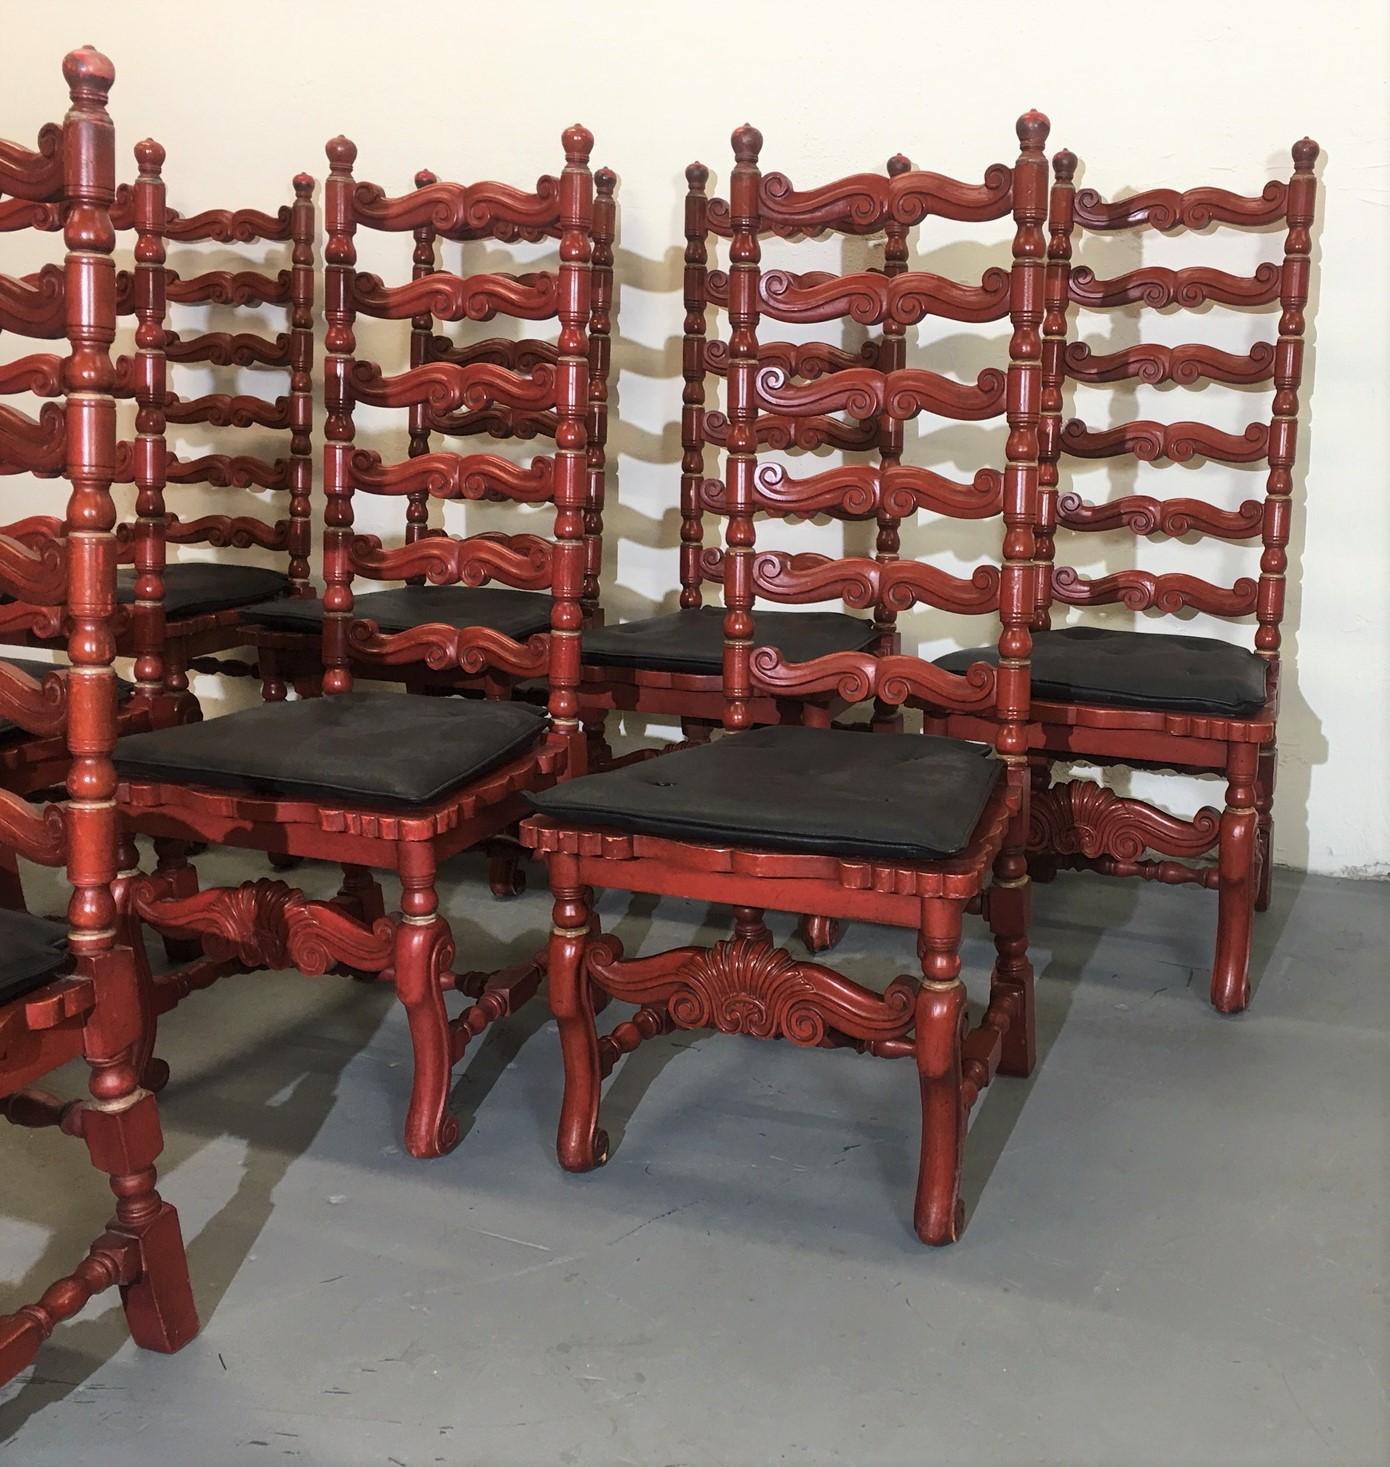 Ensemble de huit chaises à dossier échelonné. Les cadres sont en finition bois de couleur rouge. Les sièges sont nouvellement recouverts de cuir noir.